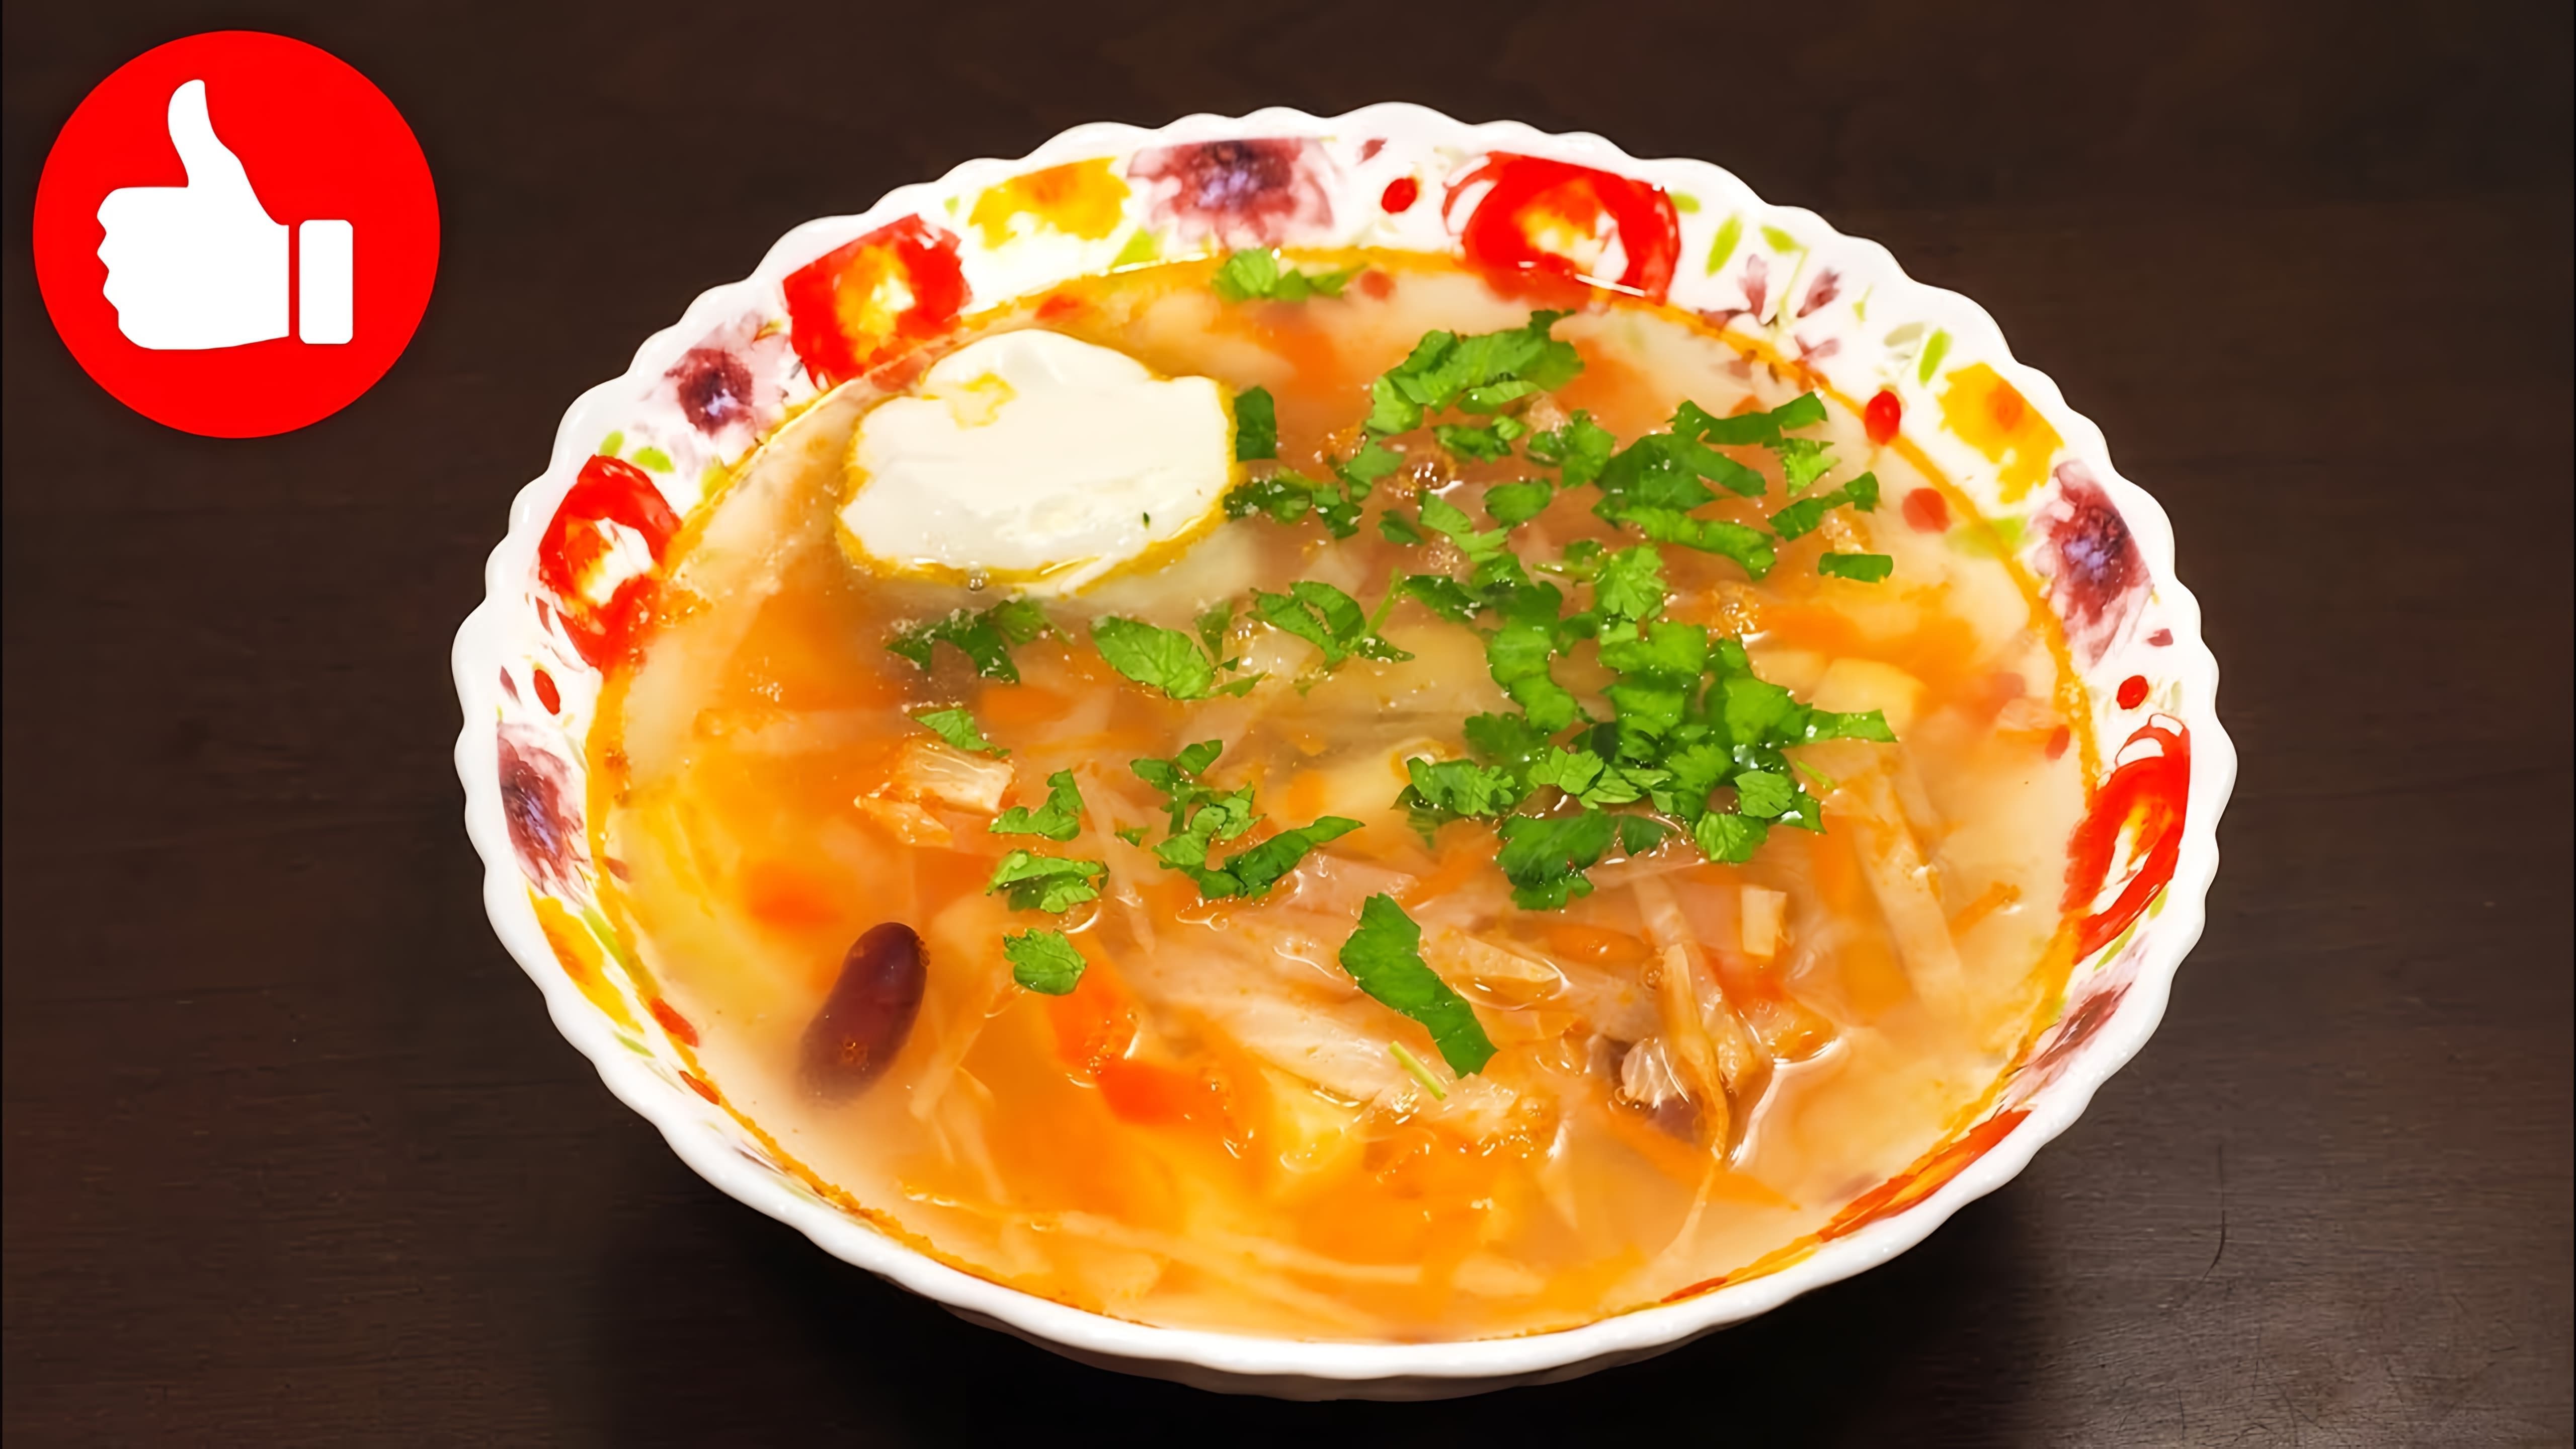 Видео рецепт овощного супа без мяса, приготовленного в мультиварке